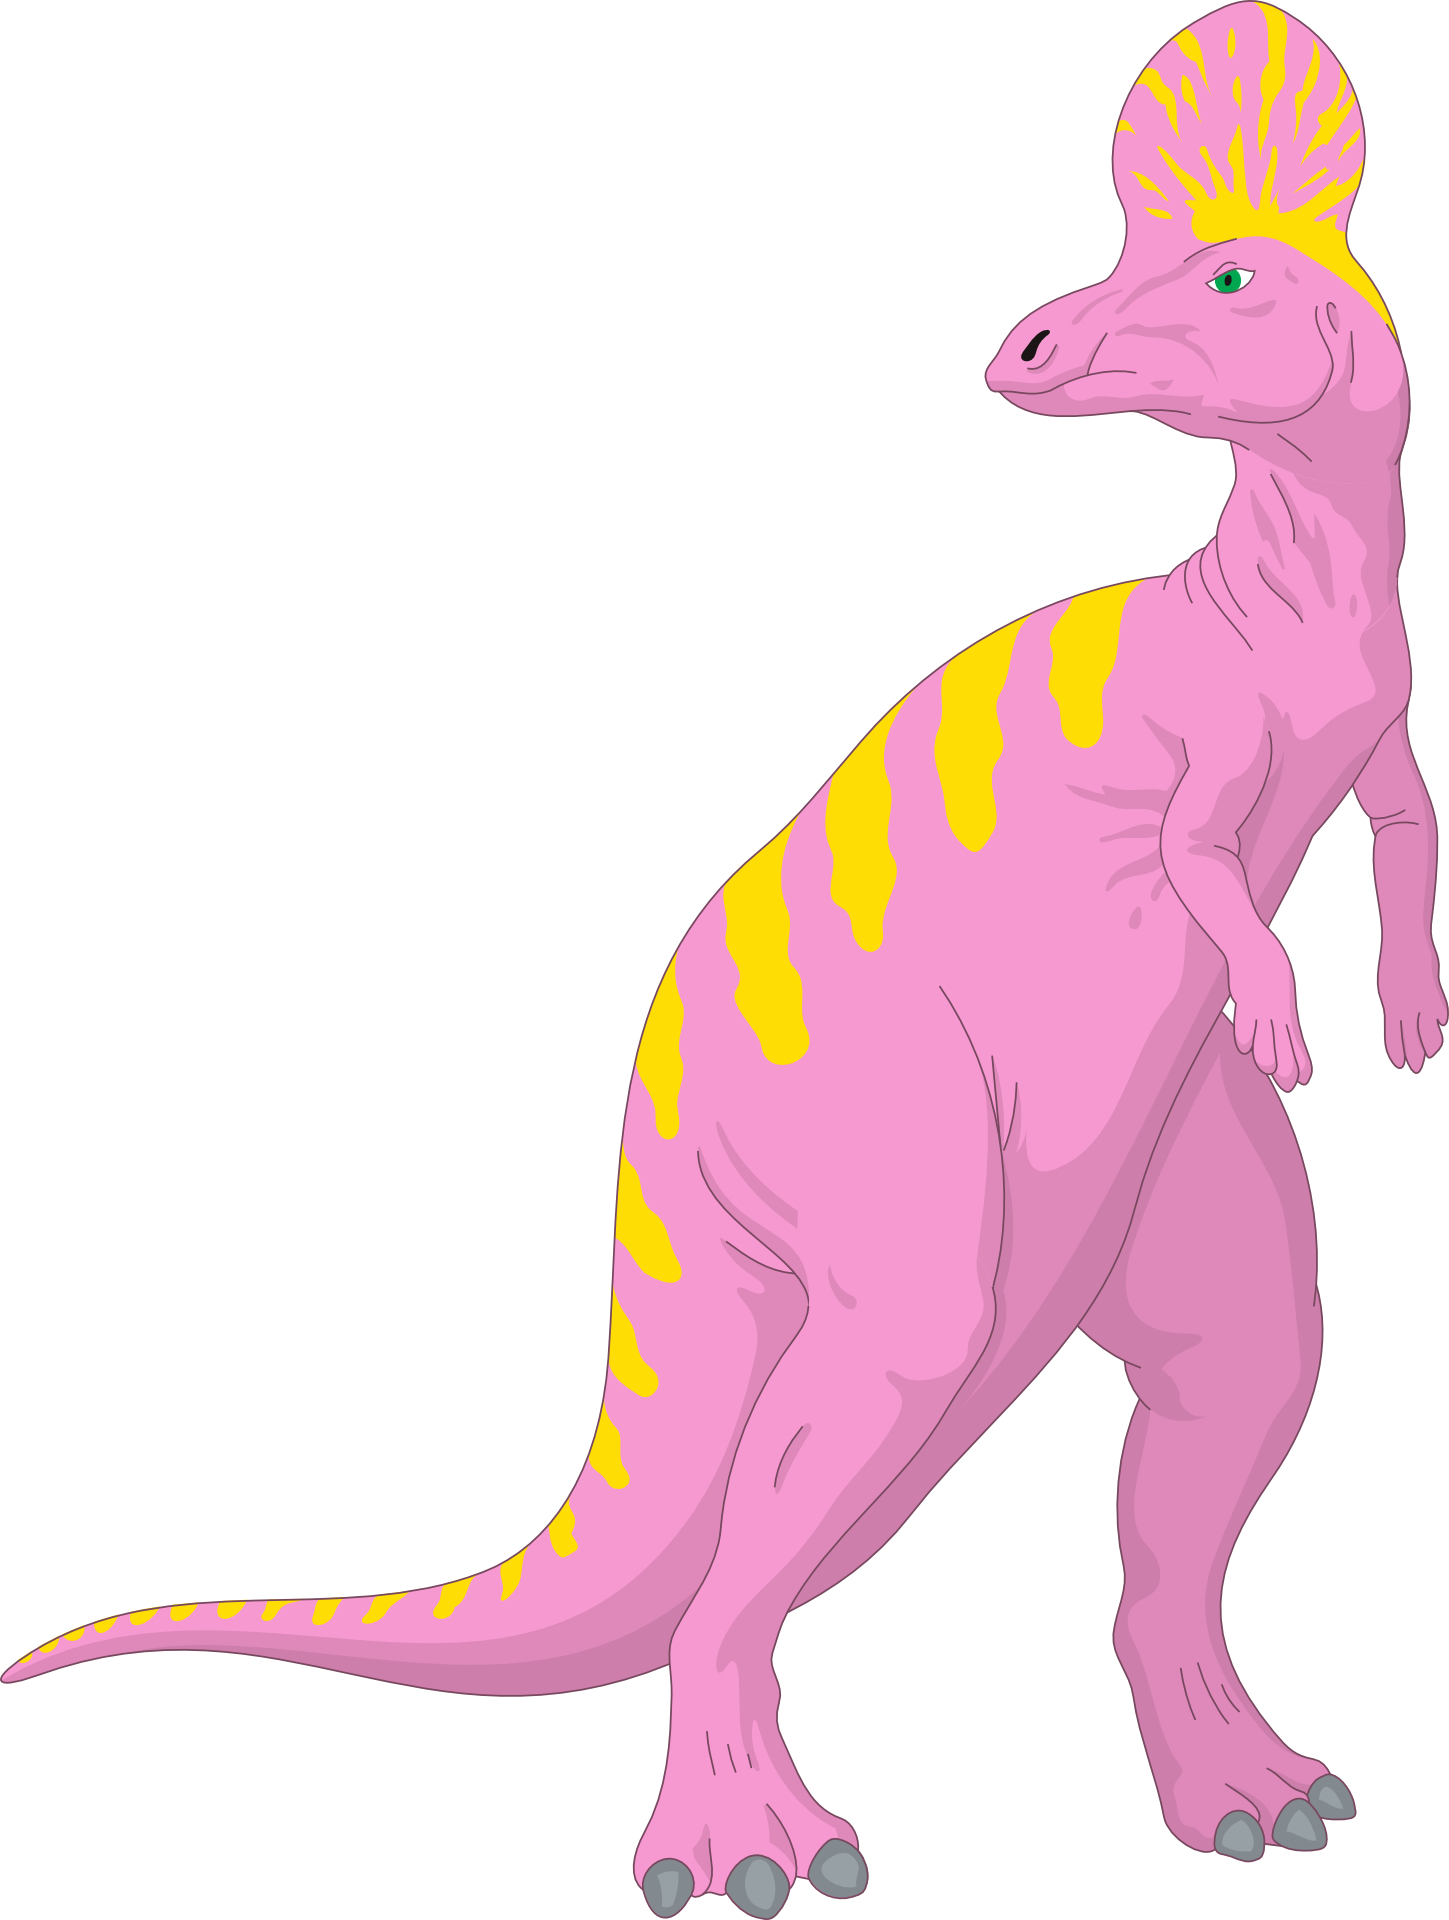 Yellow purple cartton dinosaur vector